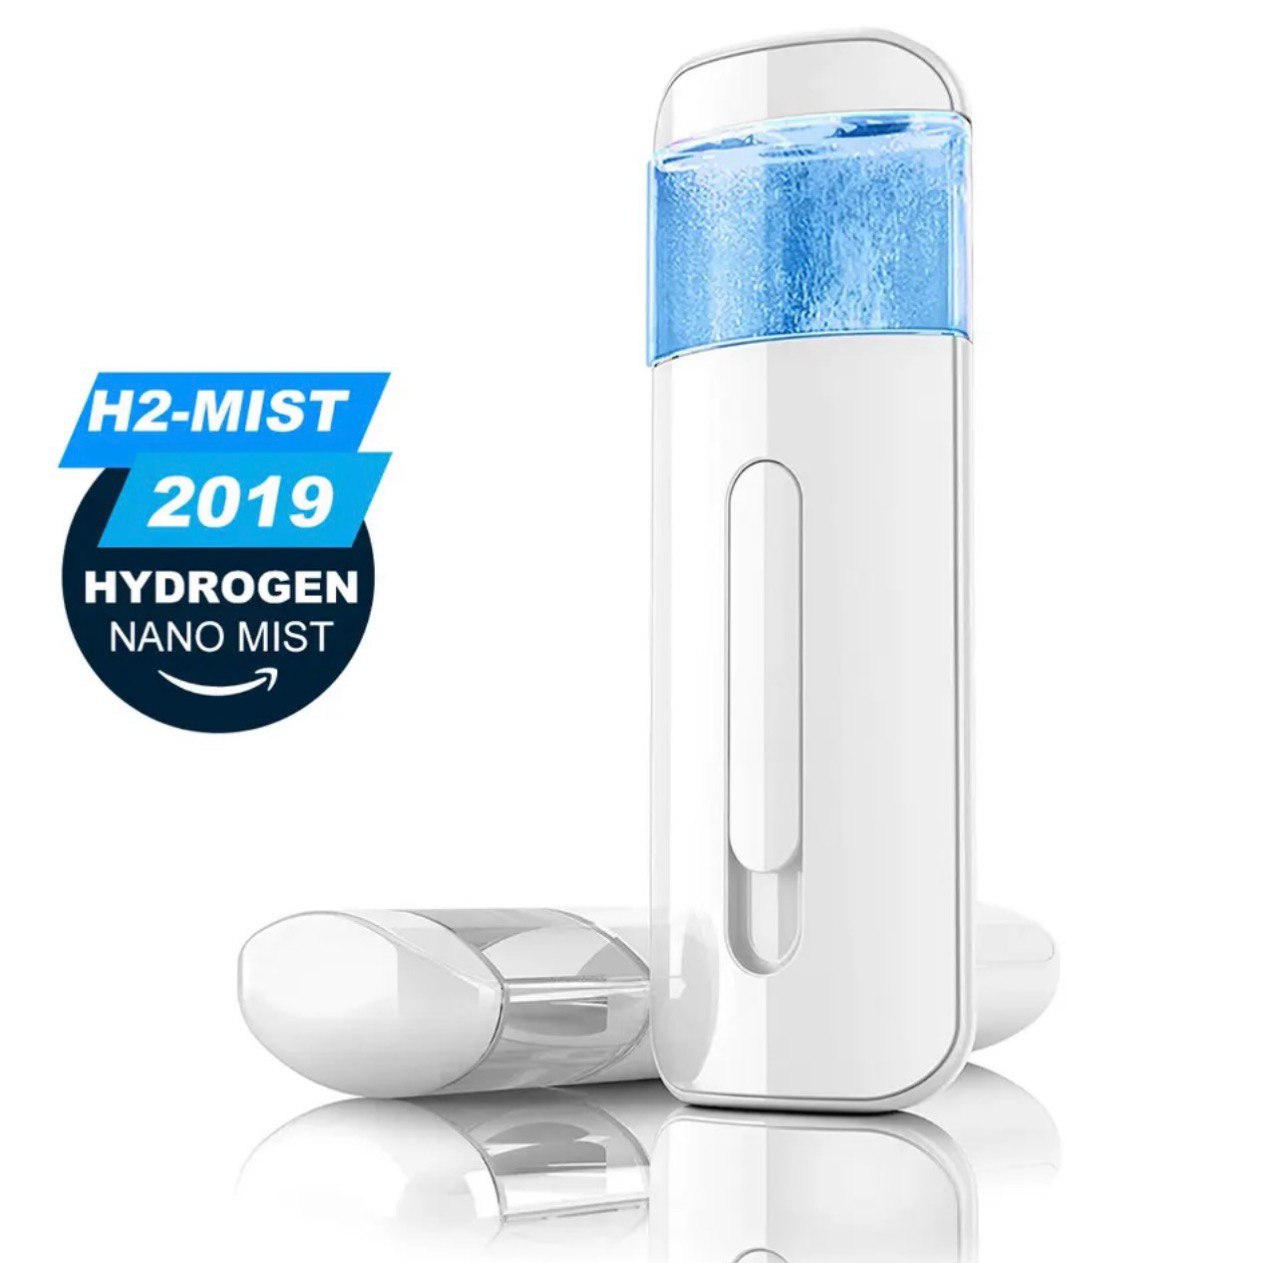 Otletayka™ Portable Hydrogen Water Nano Mist Generator